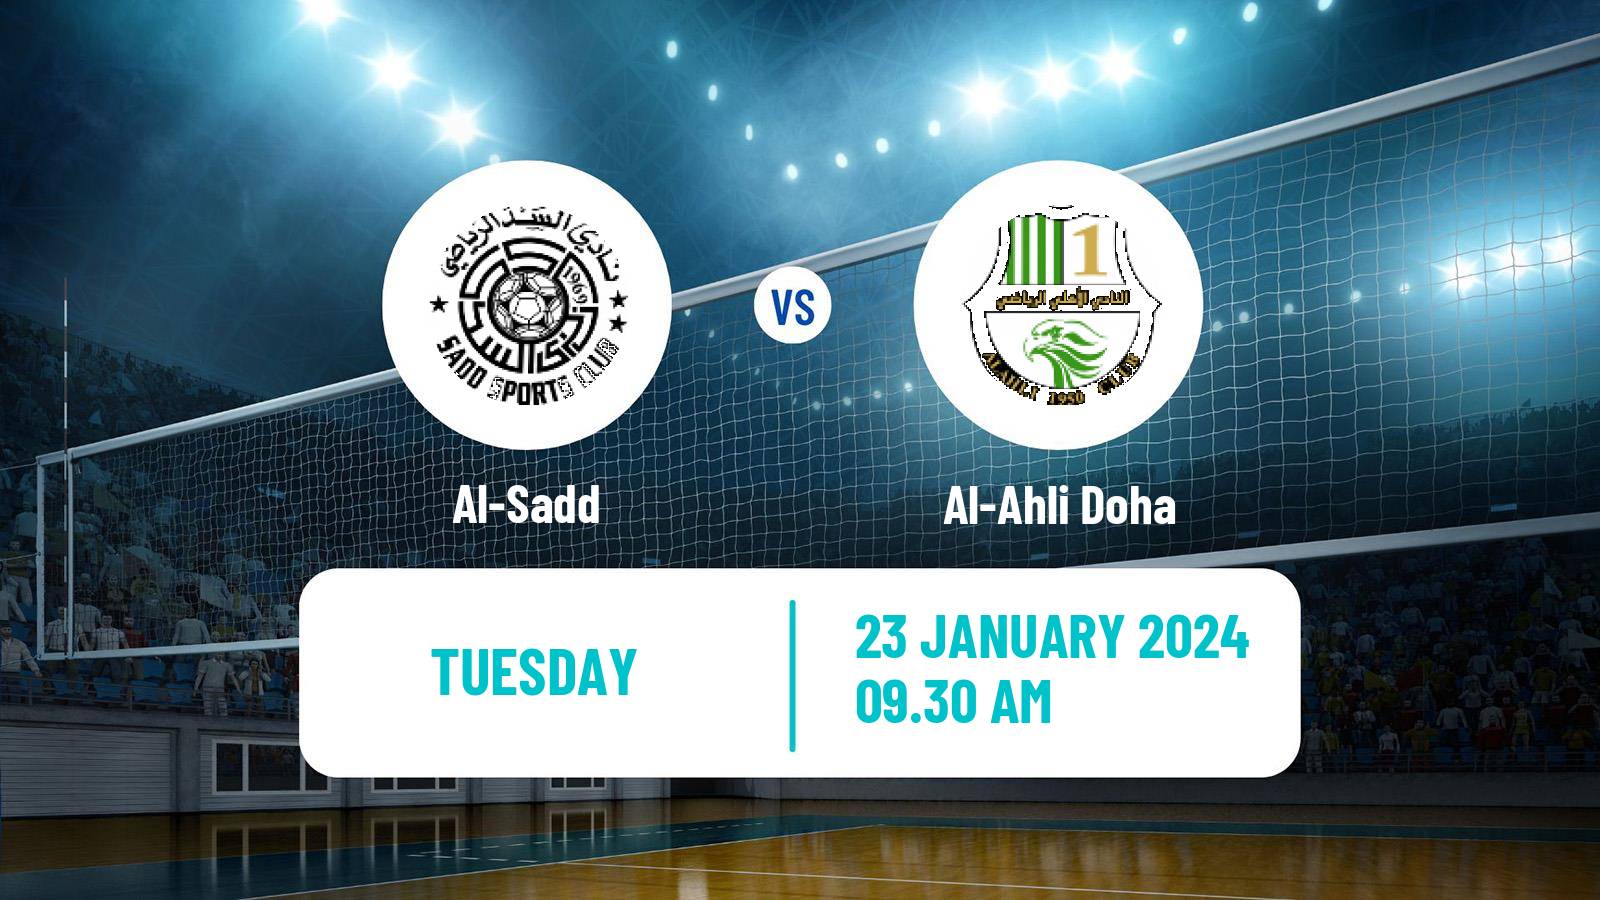 Volleyball Qatar Volleyball League Al-Sadd - Al-Ahli Doha